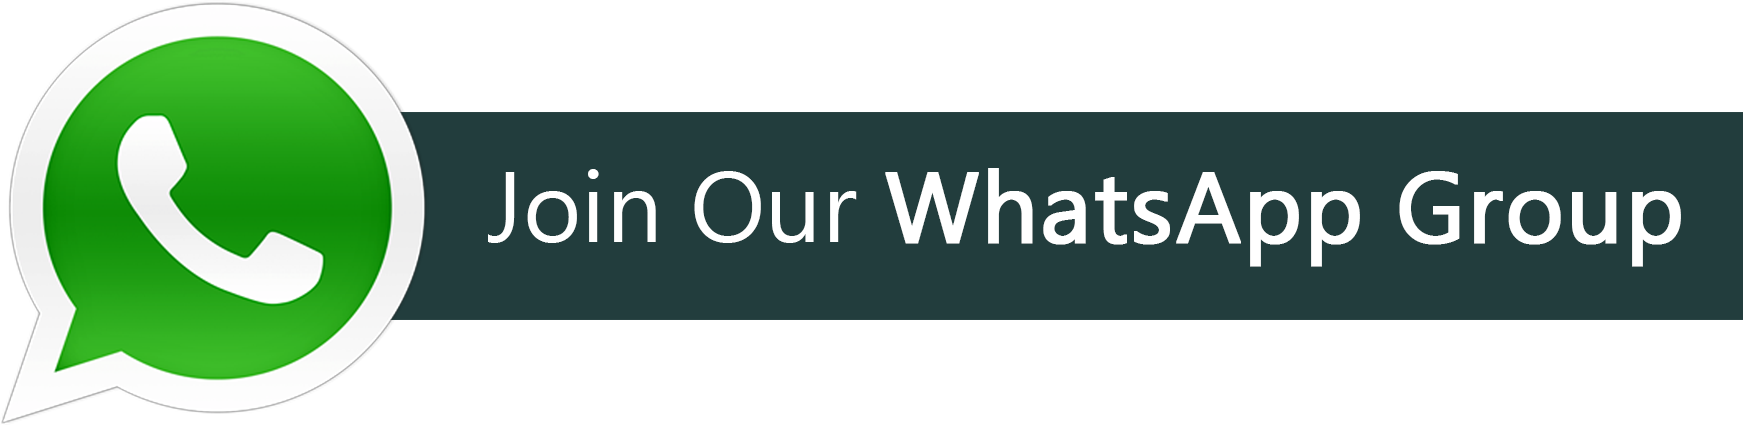 Гете ватсап. Join Group вацап. Баннер WHATSAPP. Join in. Логотип Адмирал для ватсап.